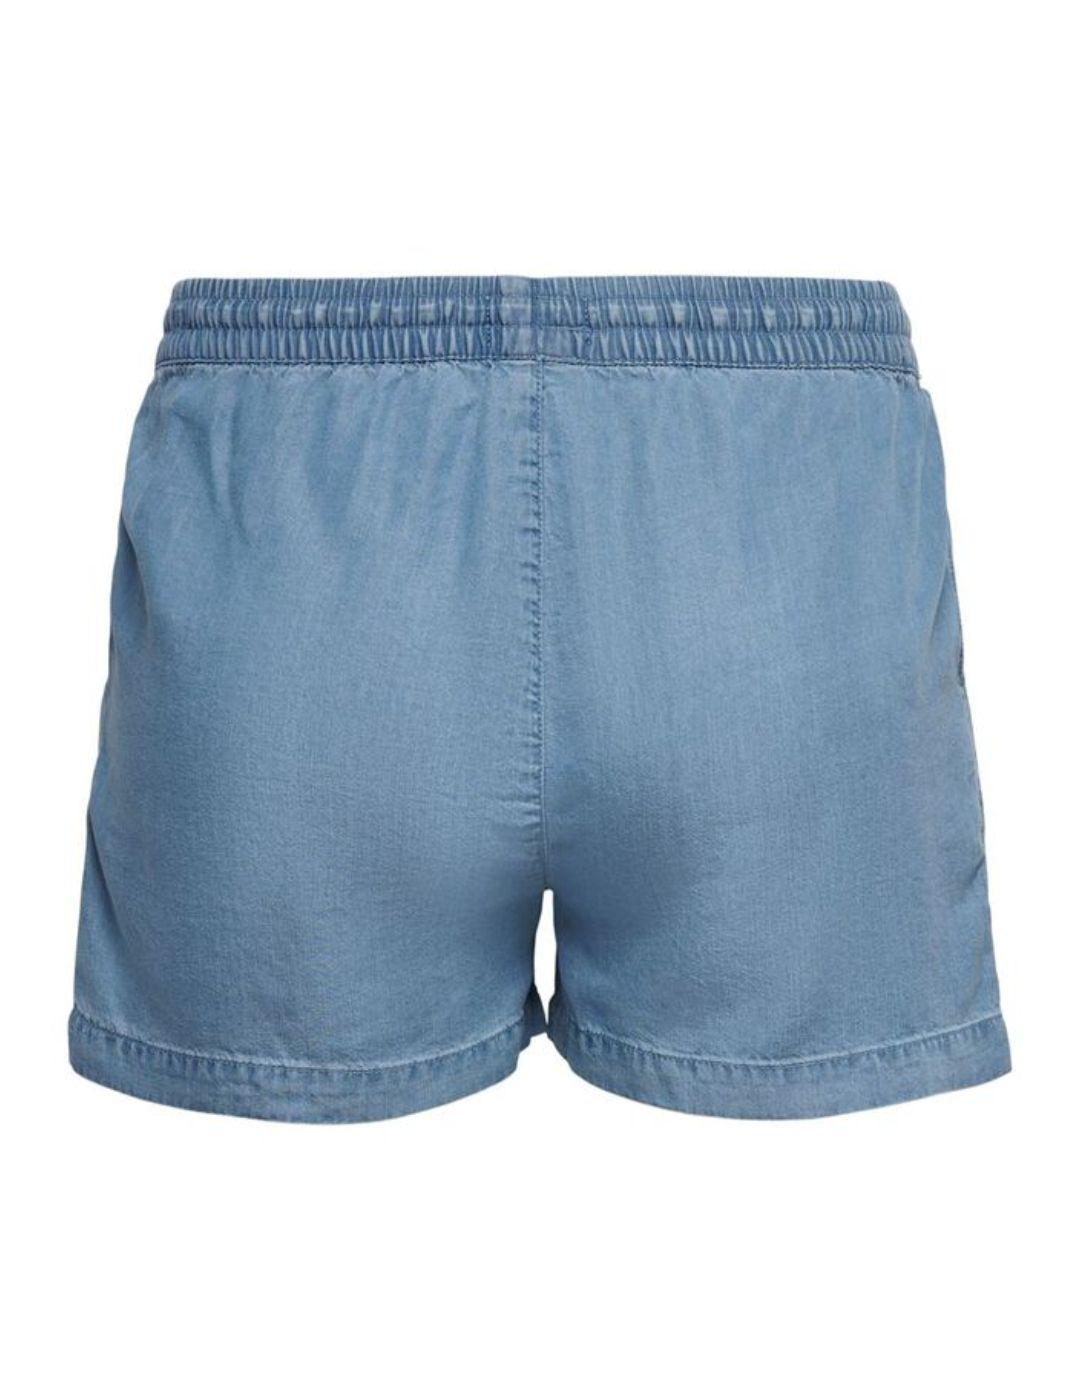 Shorts Only Pema en azul claro de mujer-a